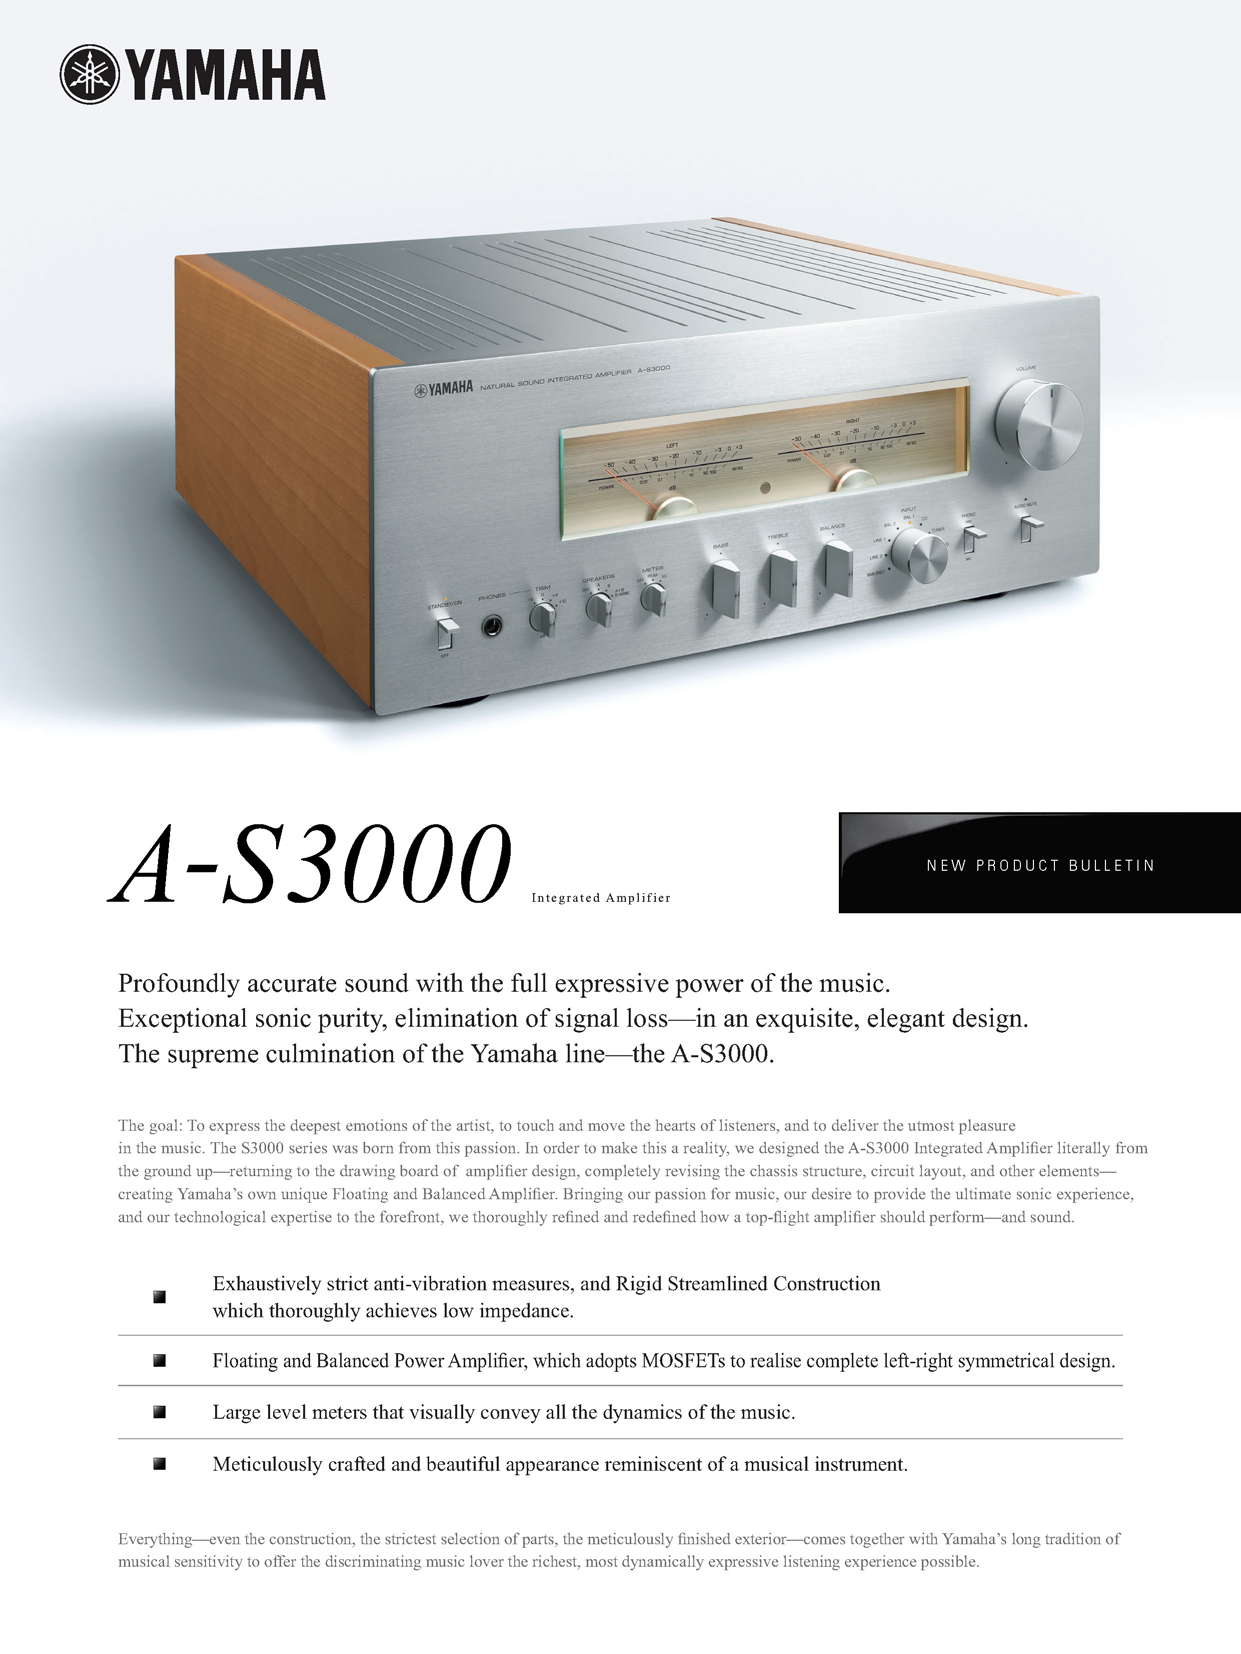 A-S3000은 음악의 힘을 전달하는 모든 표현과 깊이 있고 정확한 사운드를 제공합 니다. 뛰어난 음질, 신호손실 요인의 제거는 물론 절묘하고 우아한 디자인이 어우 러져 있습니다. 야먀하 하이파이 시리즈 최고의 라인업인 A-S3000을 소개합니다.